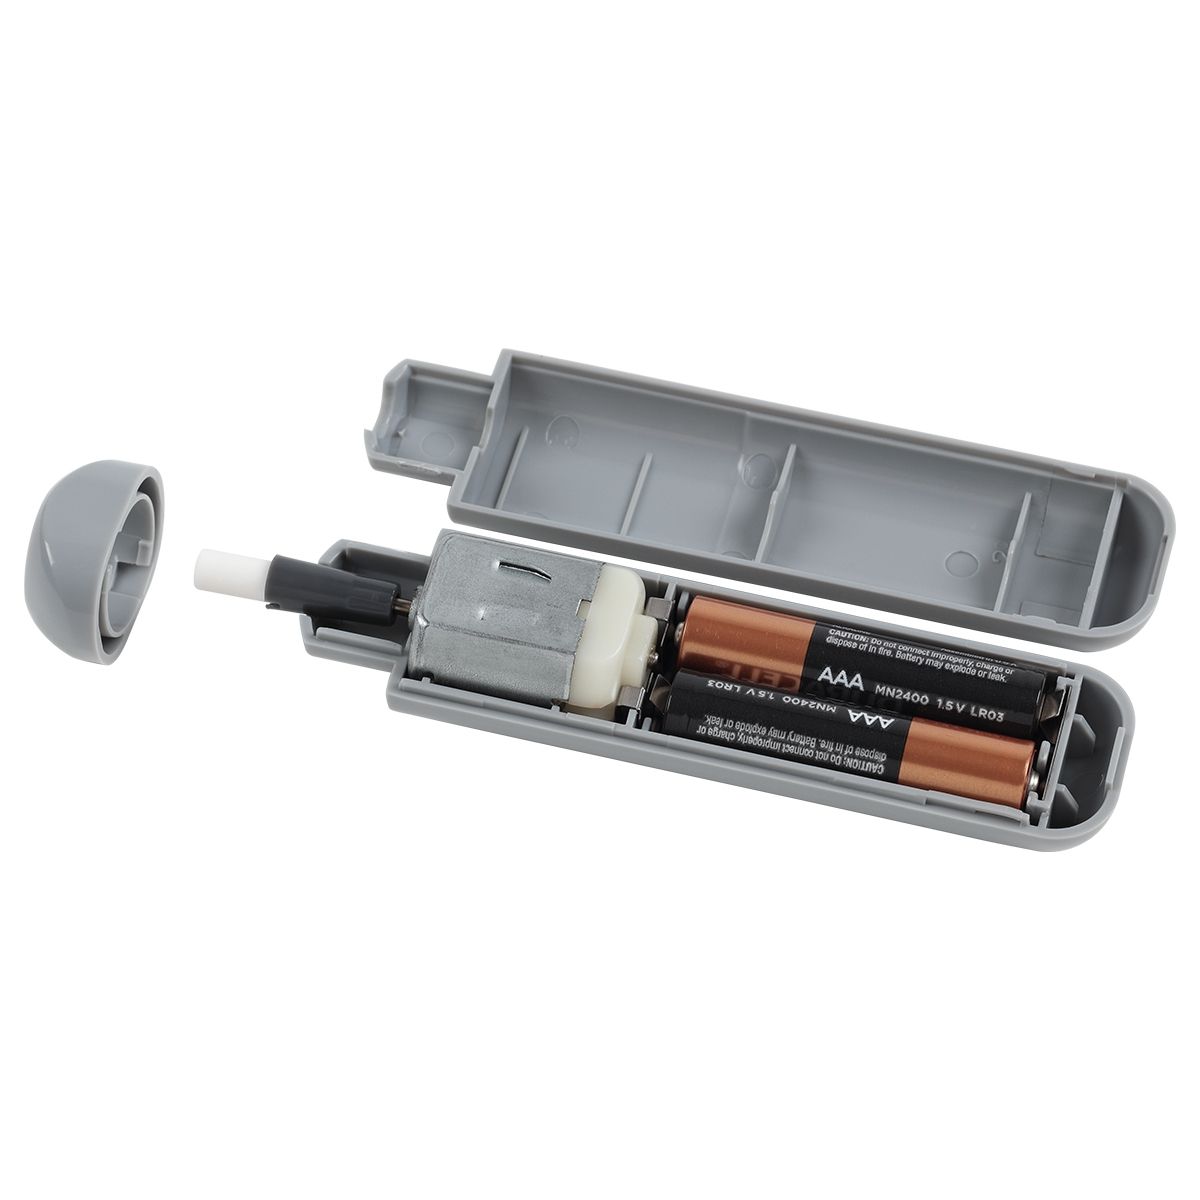 Battery Powered Art Eraser - QuickFix+